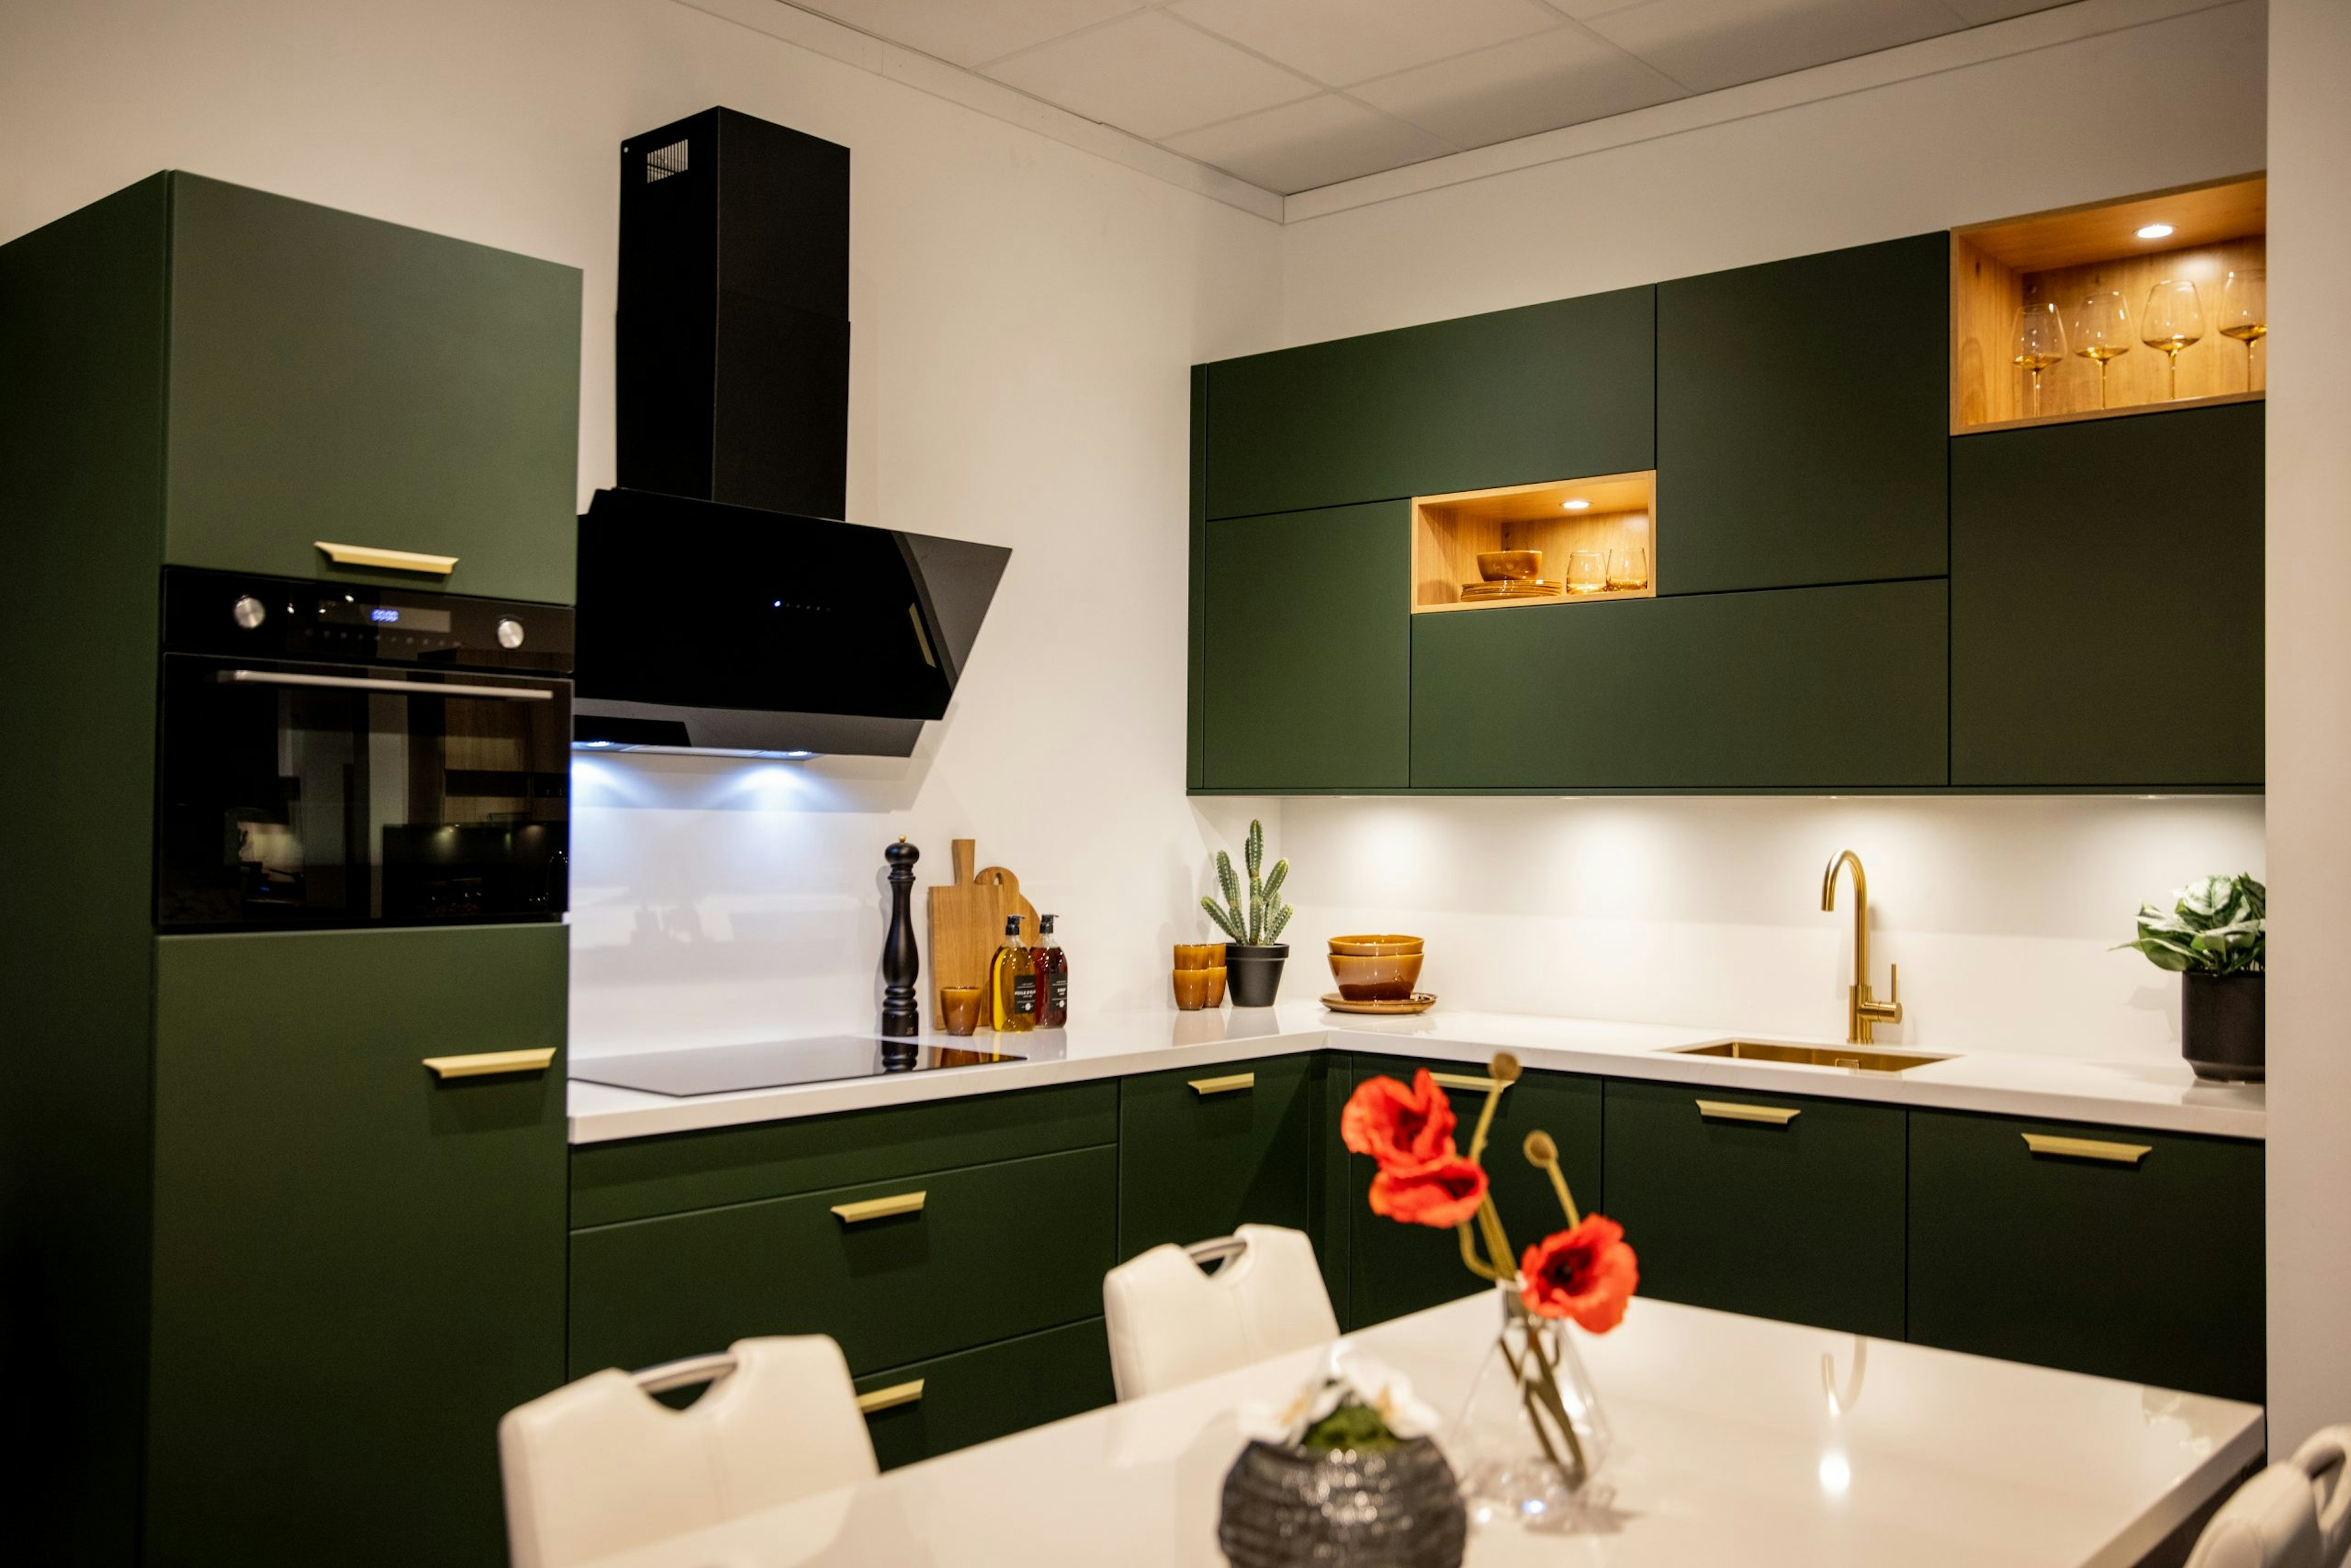 De mat groengelakte fronten geven deze keuken haar unieke uitstraling - Bemmel & Kroon keukens